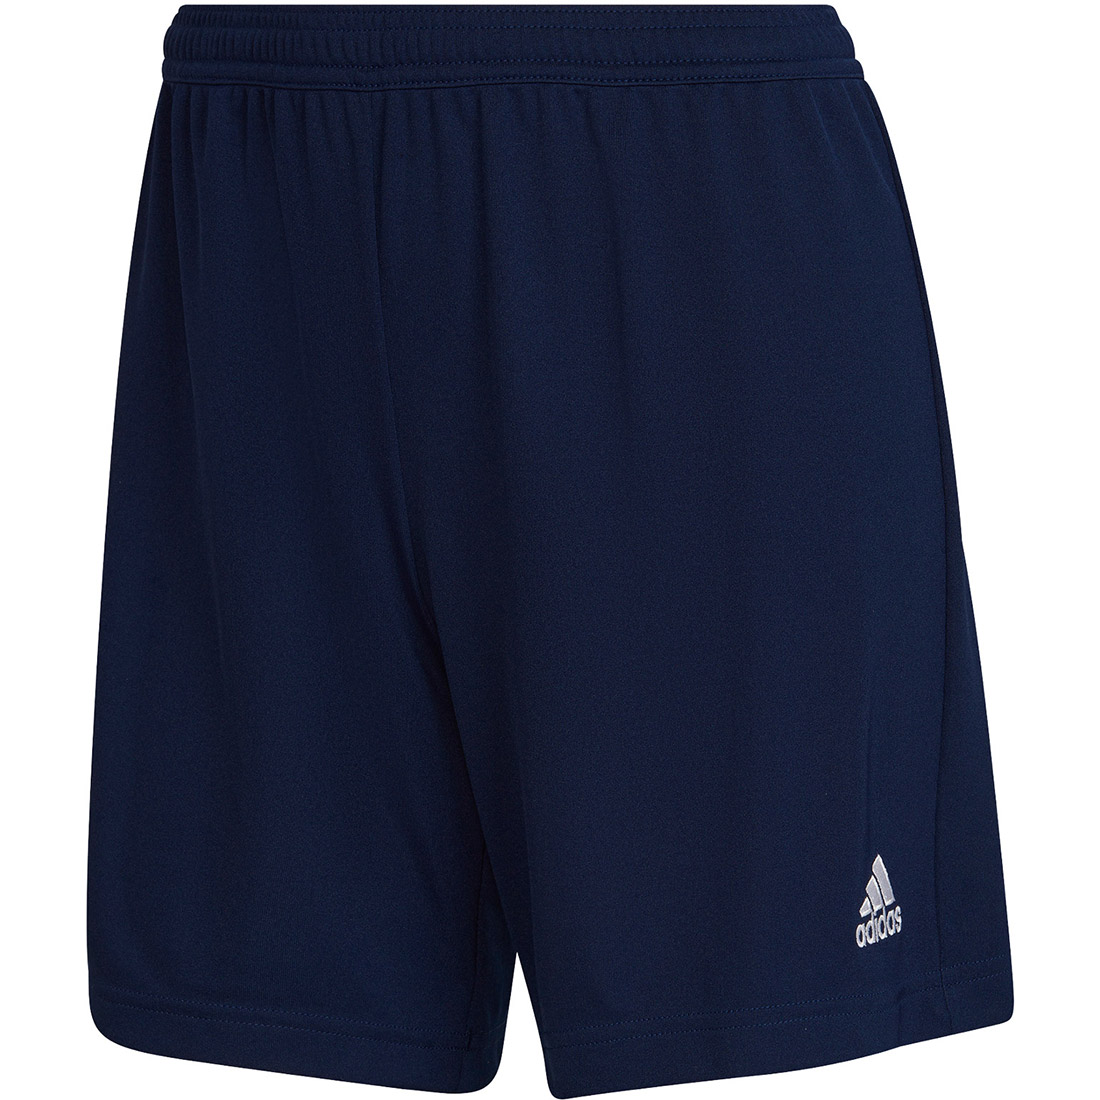 Adidas Damen Shorts Entrada 22 blau